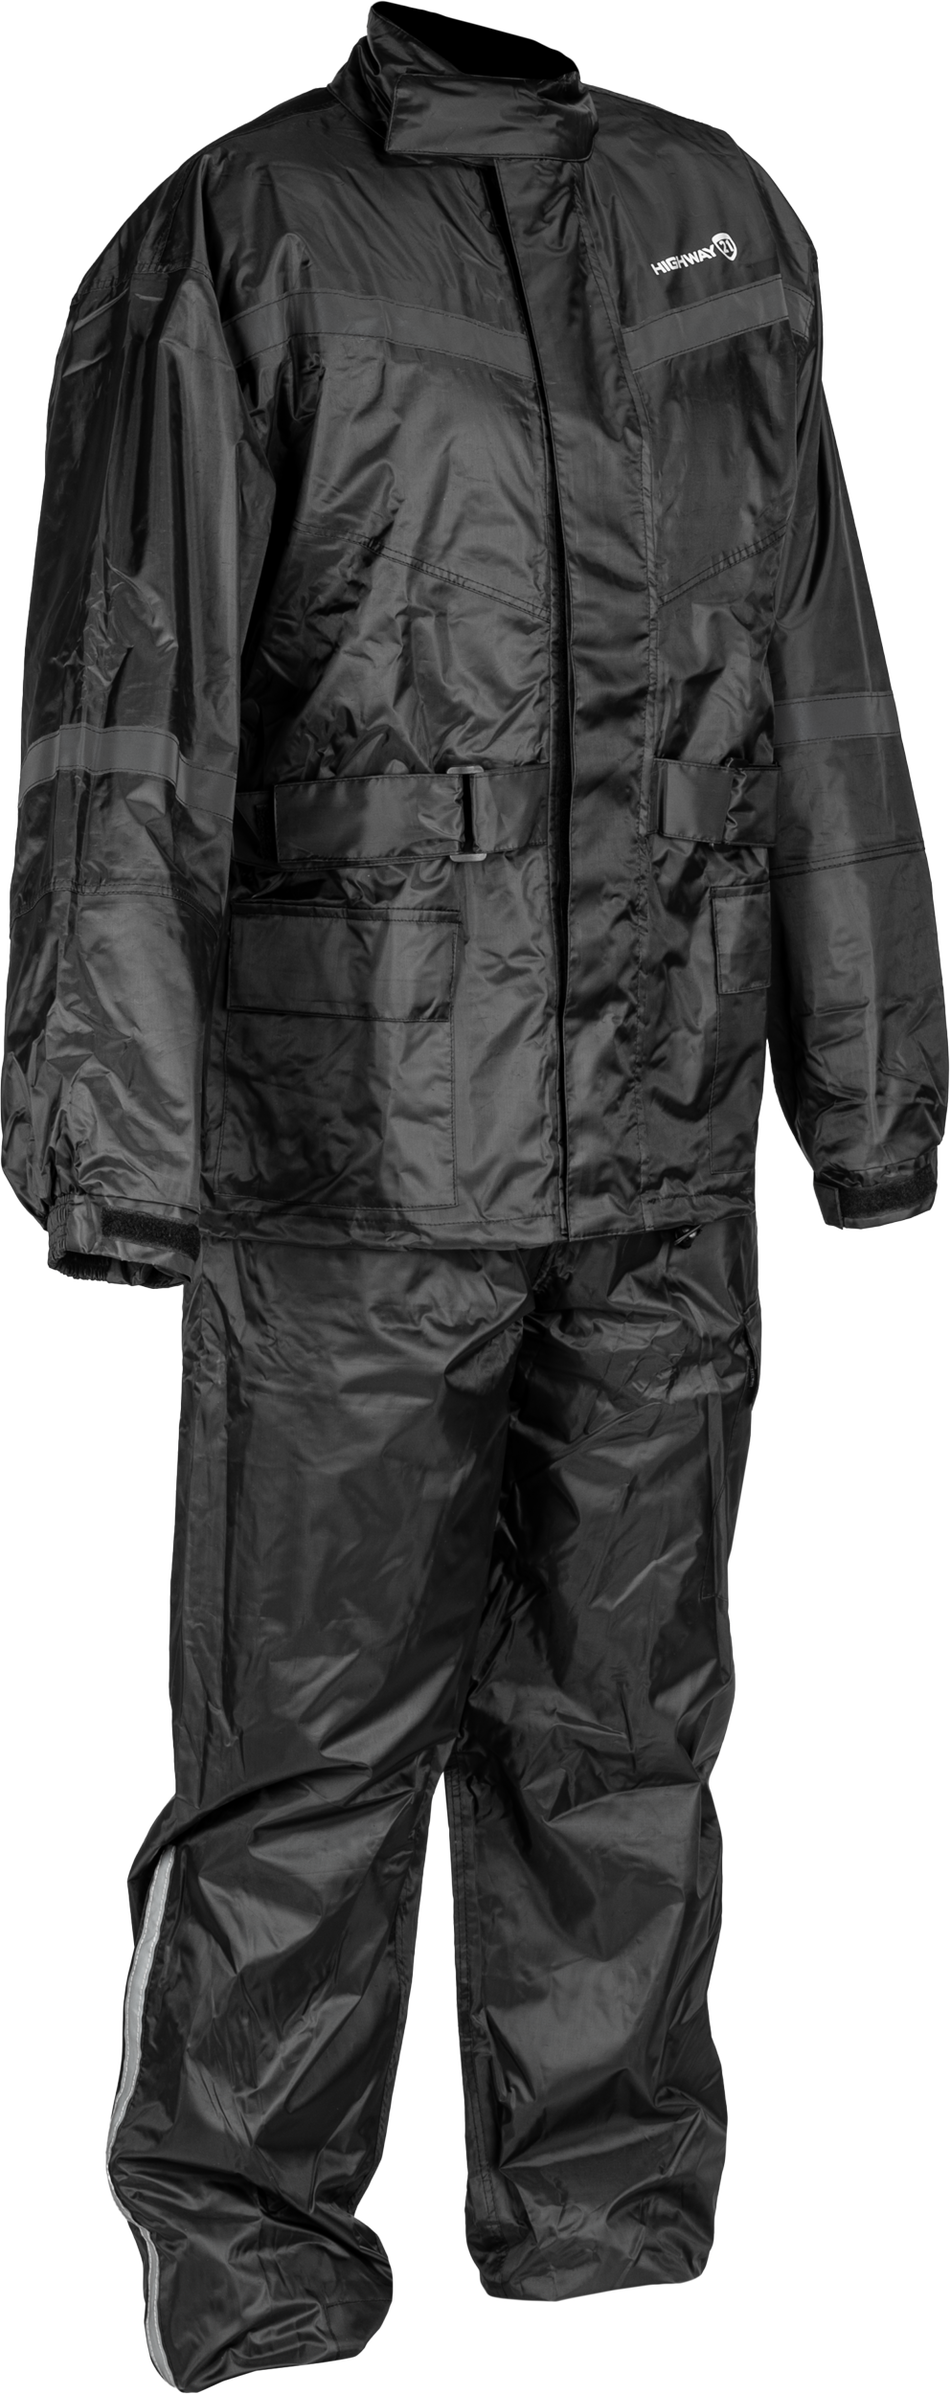 HIGHWAY 21 2 Piece Rain Suit Black Md 489-4000M